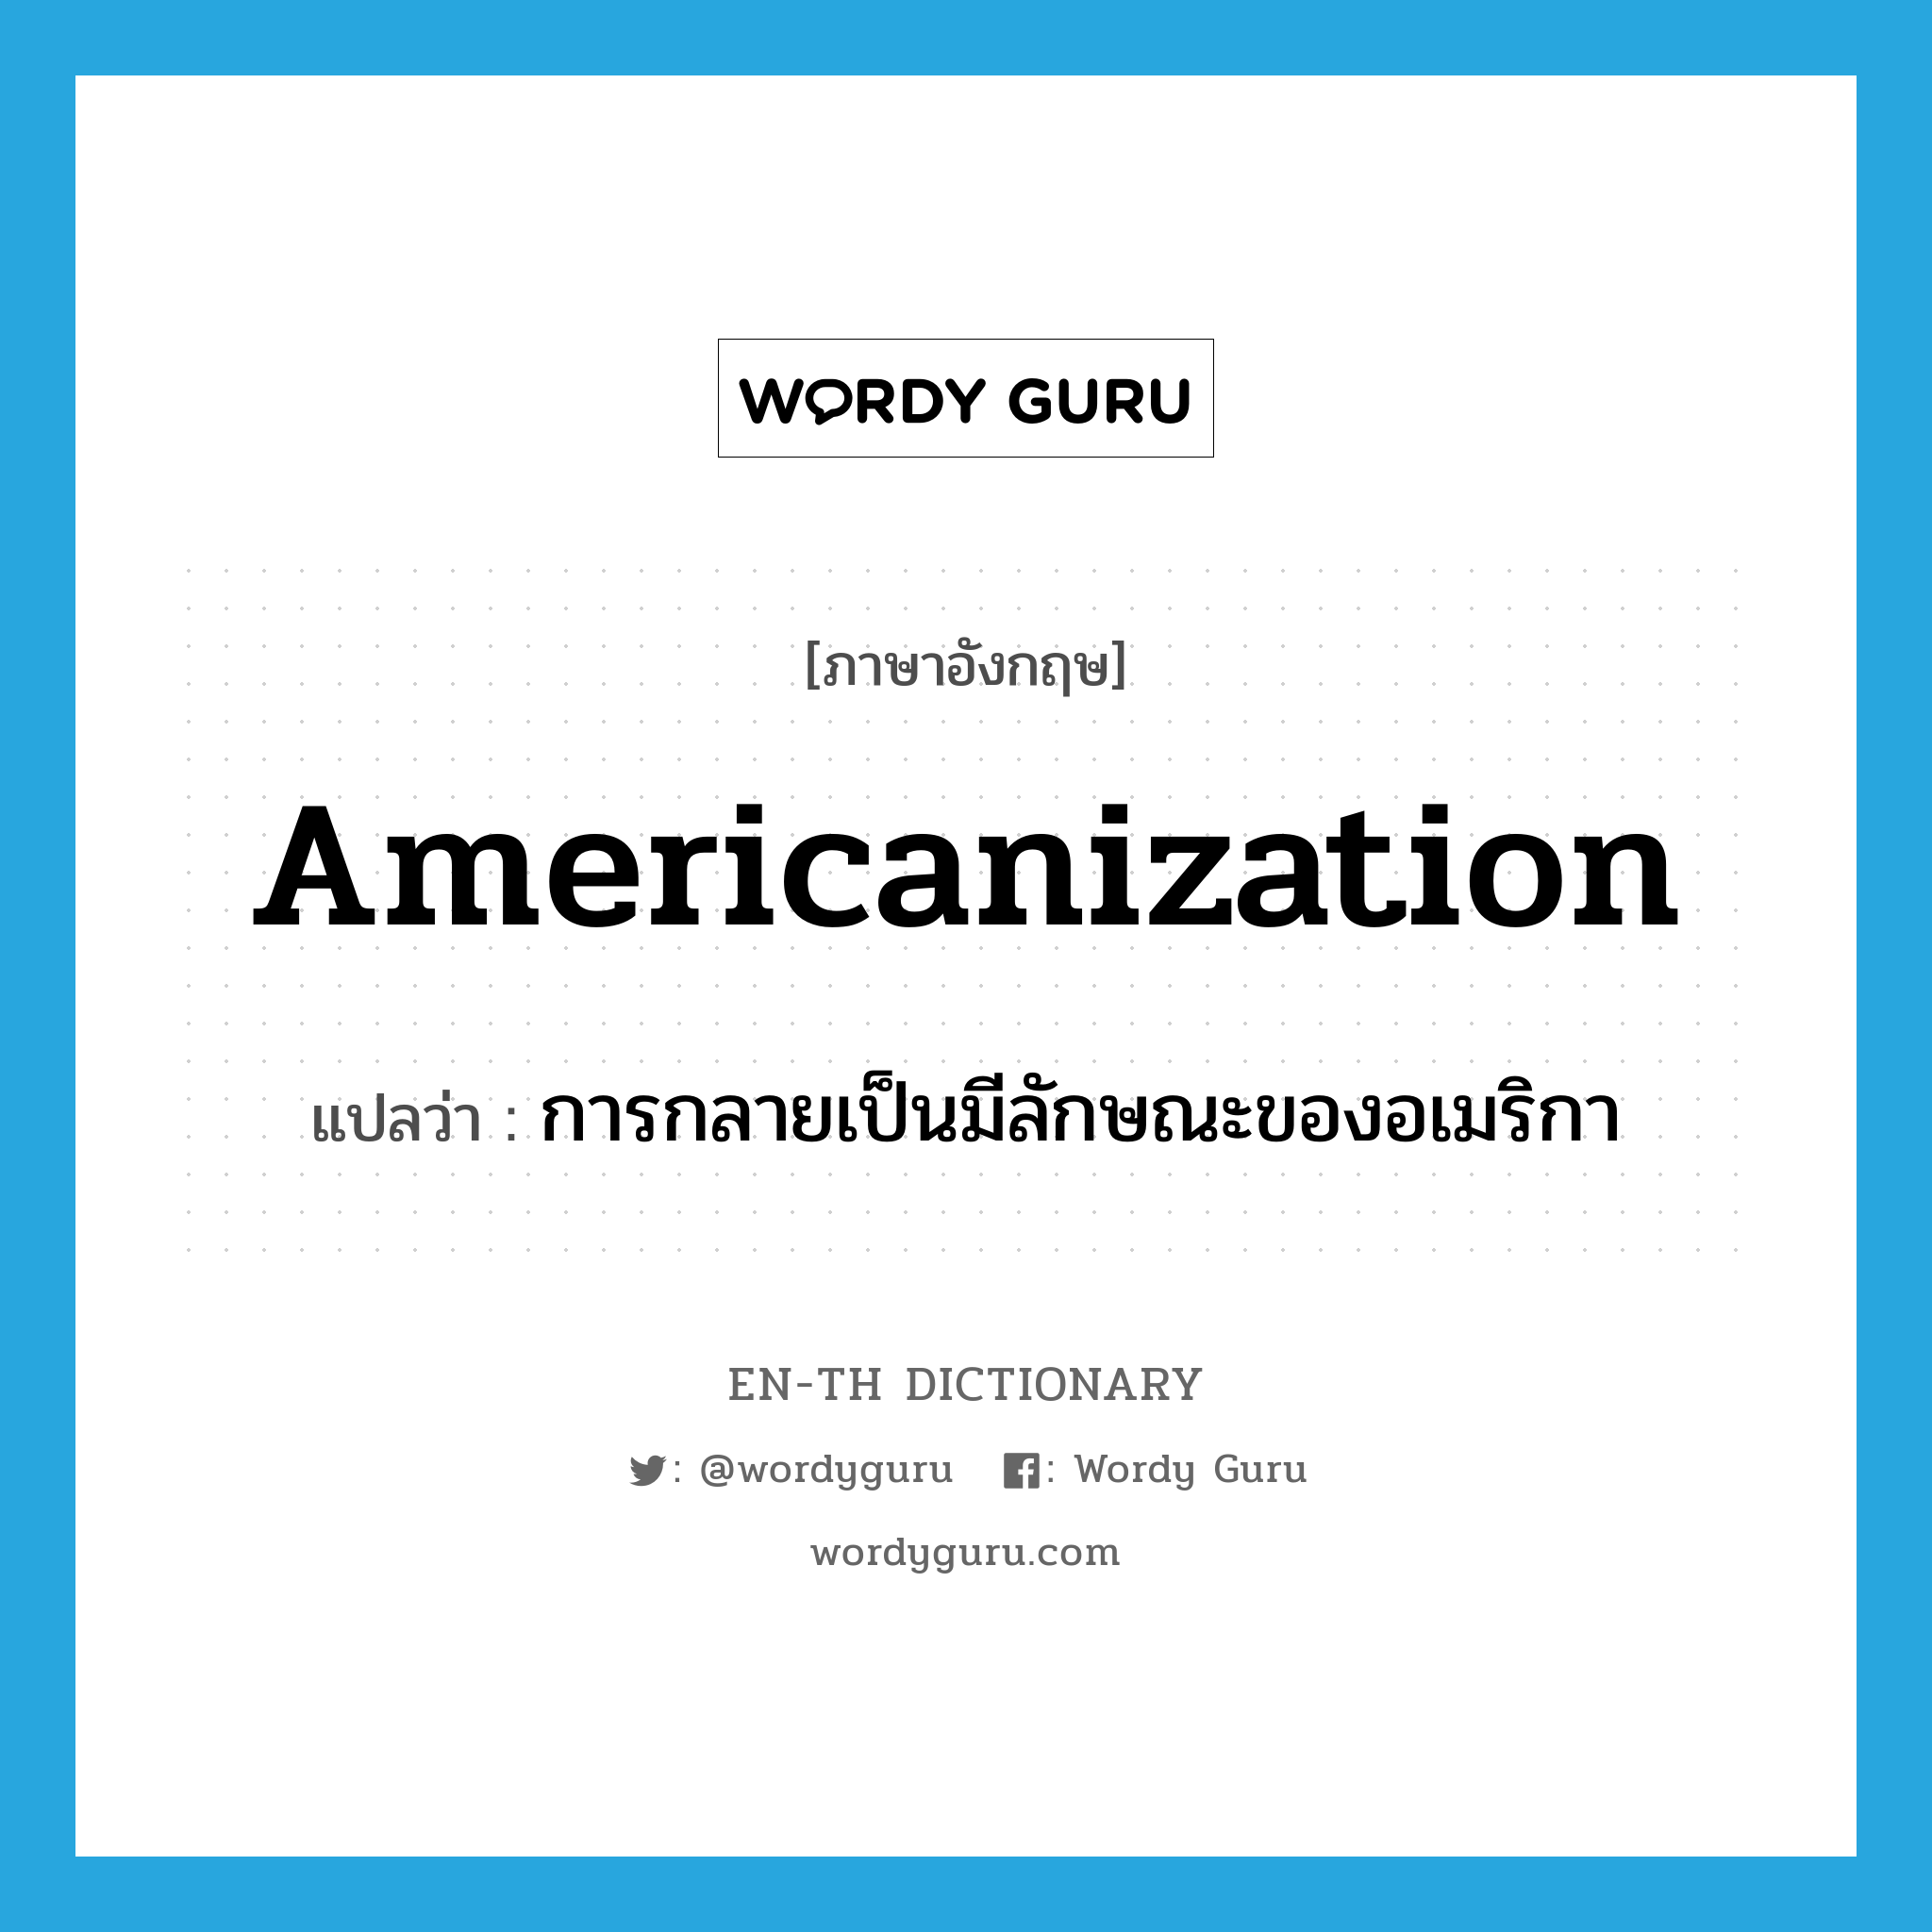 การกลายเป็นมีลักษณะของอเมริกา ภาษาอังกฤษ?, คำศัพท์ภาษาอังกฤษ การกลายเป็นมีลักษณะของอเมริกา แปลว่า Americanization ประเภท N หมวด N